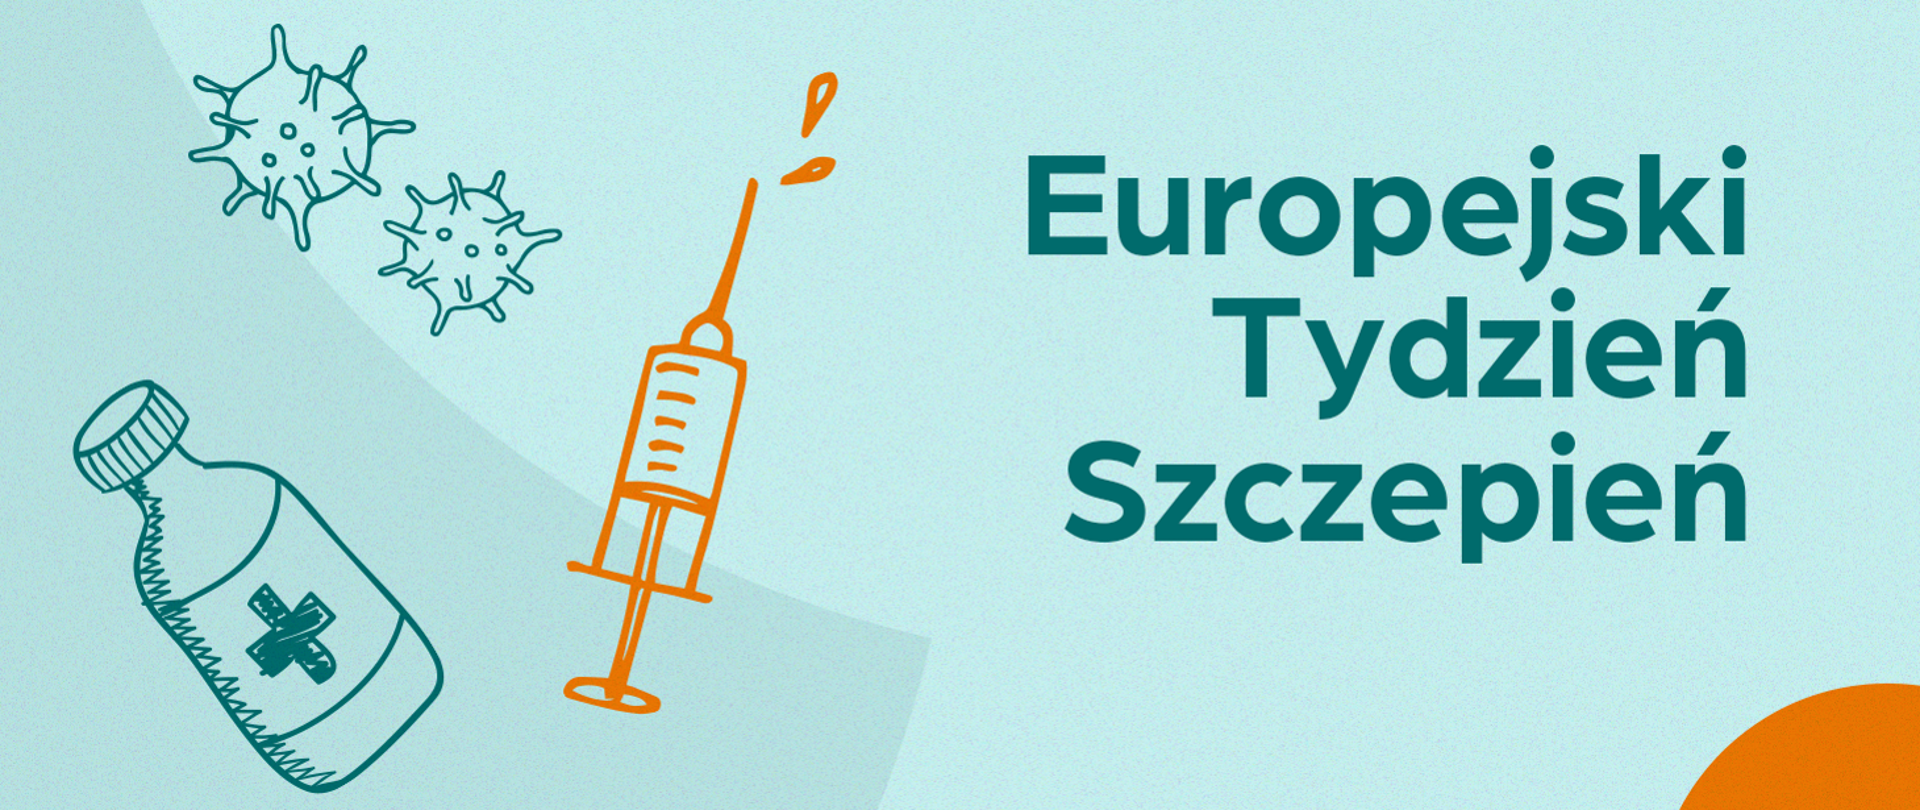 Niebieskie tło. Z lewej strony szkic fiolki z lekarstwami, strzykawki i dwóch wirusów. Z prawej strony napis: europejski tydzień szczepień.